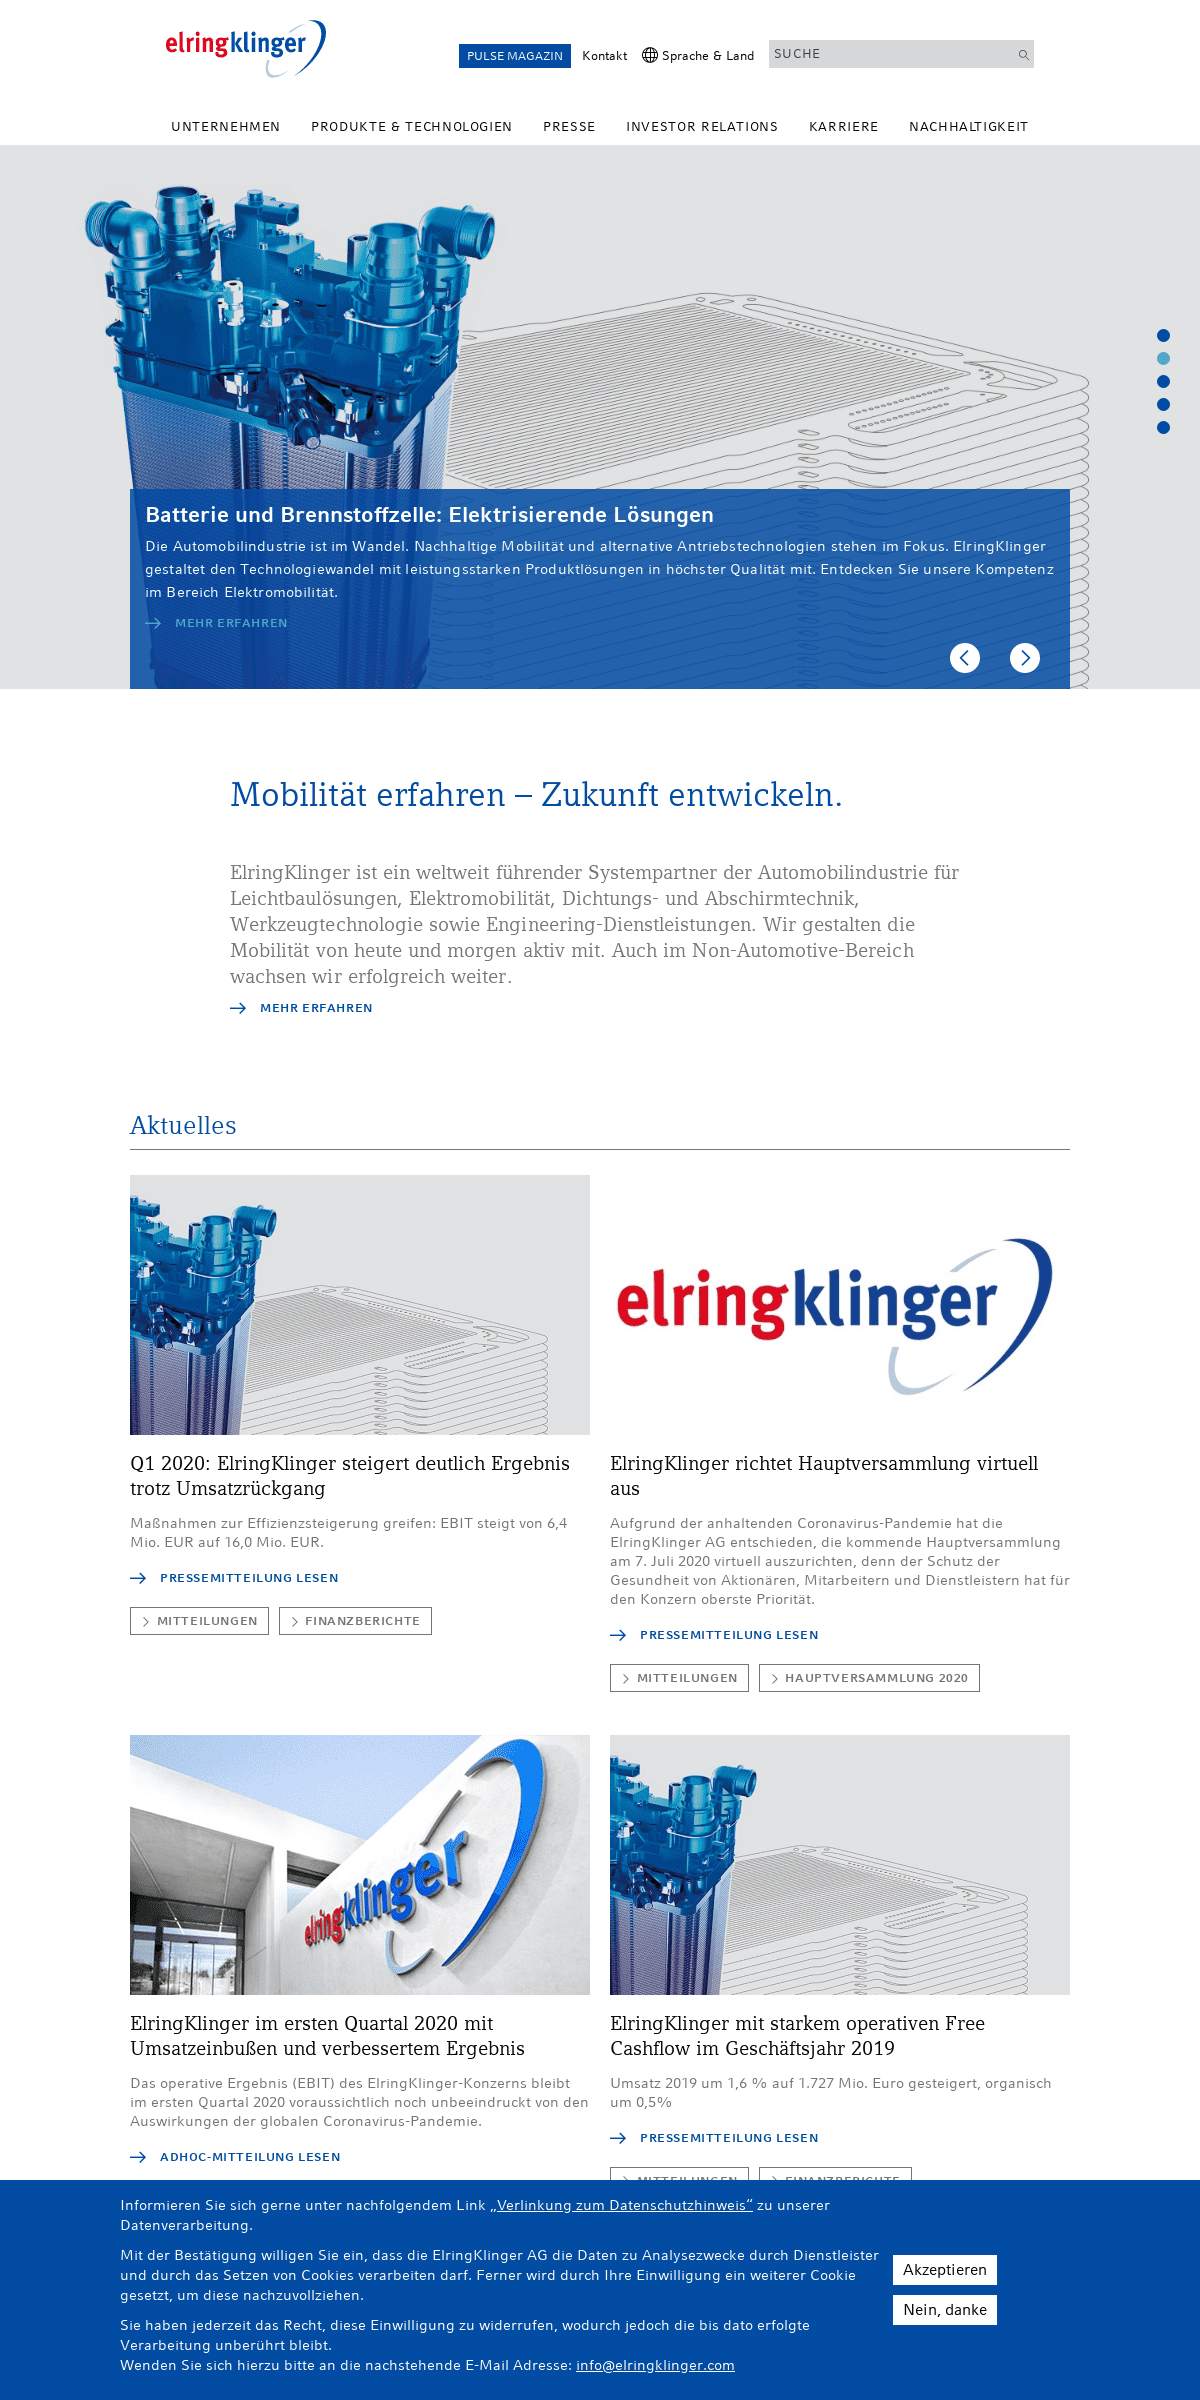 A complete backup of elringklinger.de